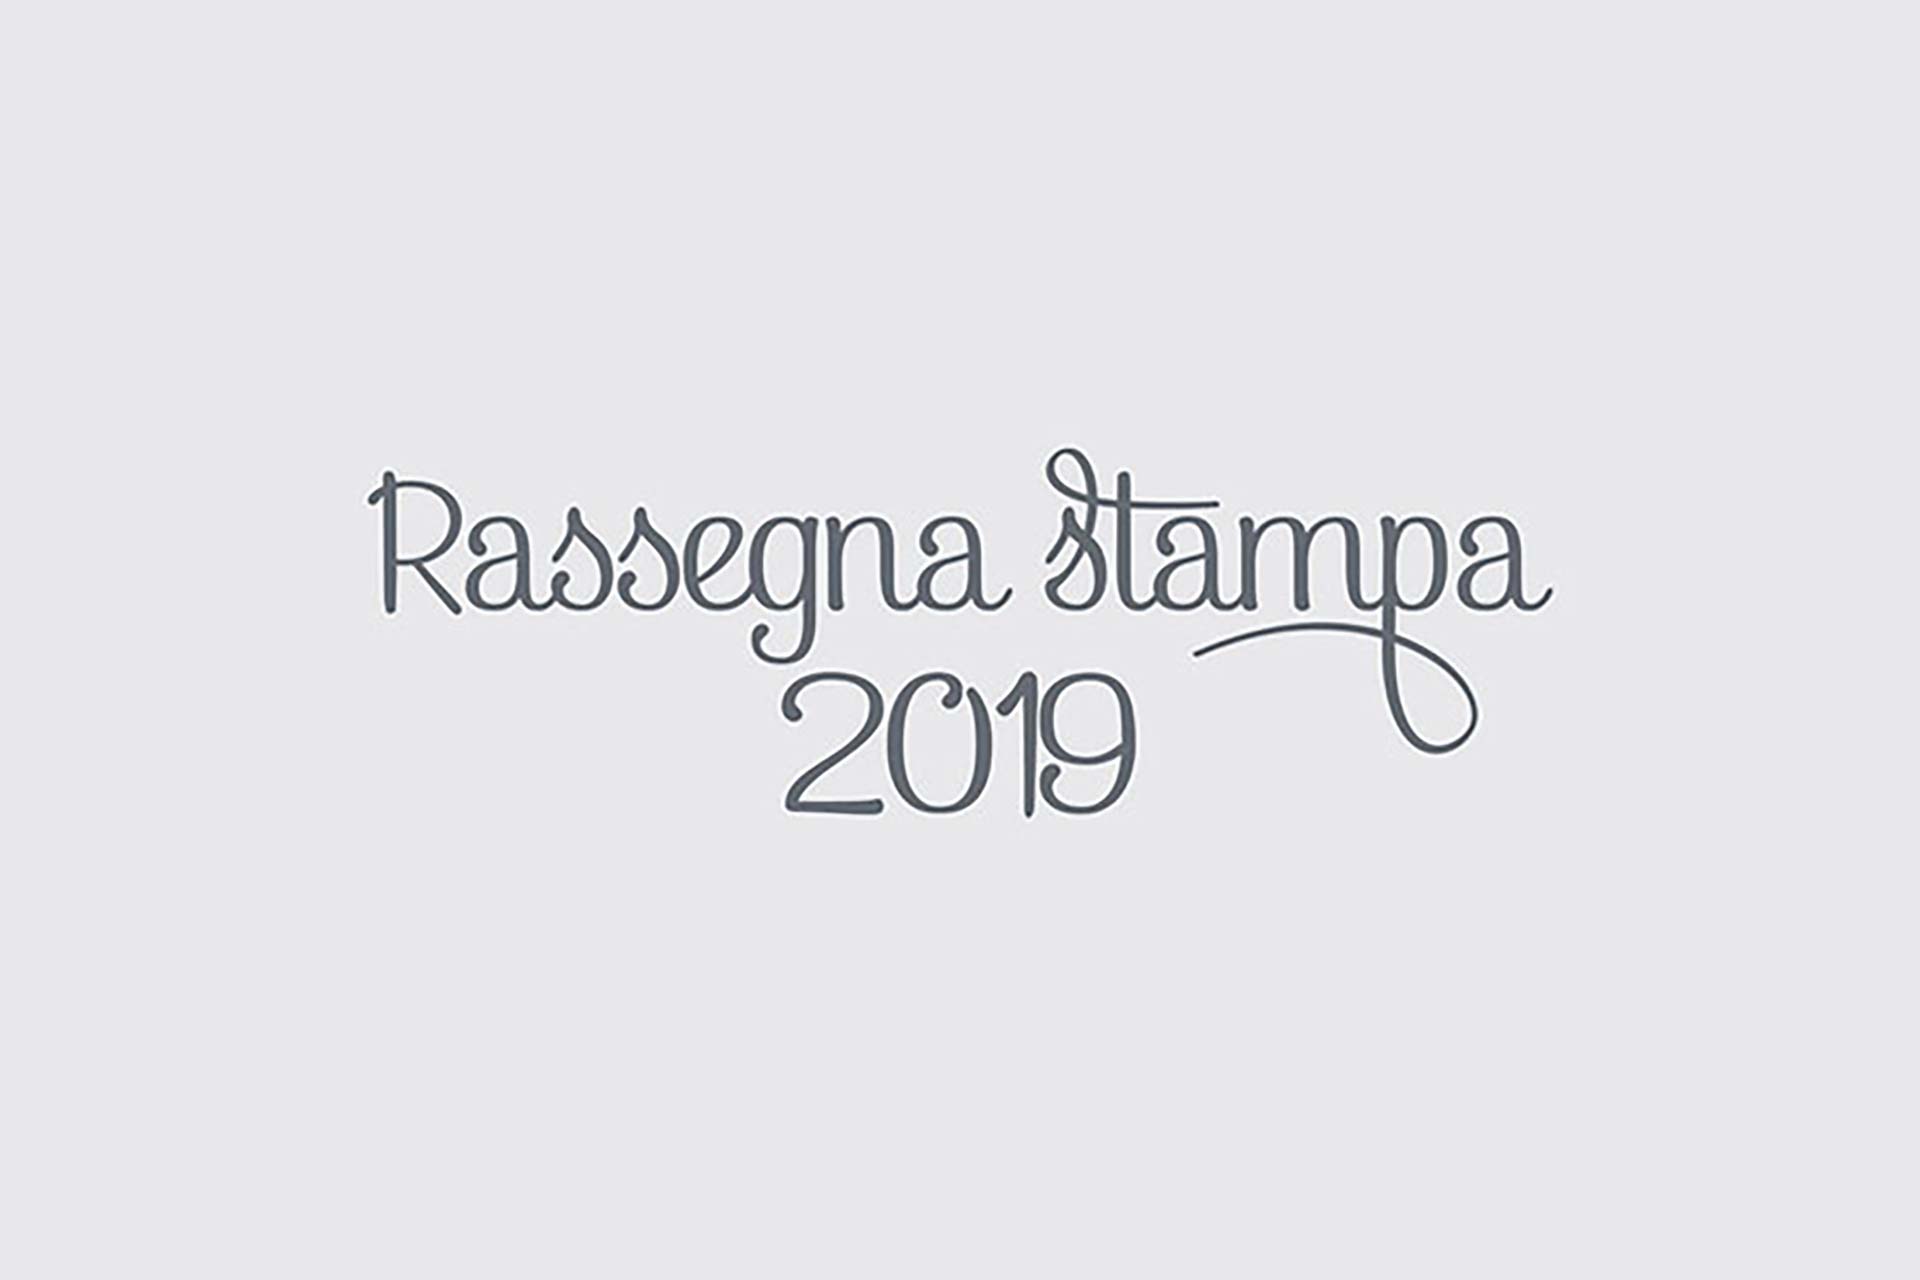 Rassegna Stampa 2019 - Ristorante Almare